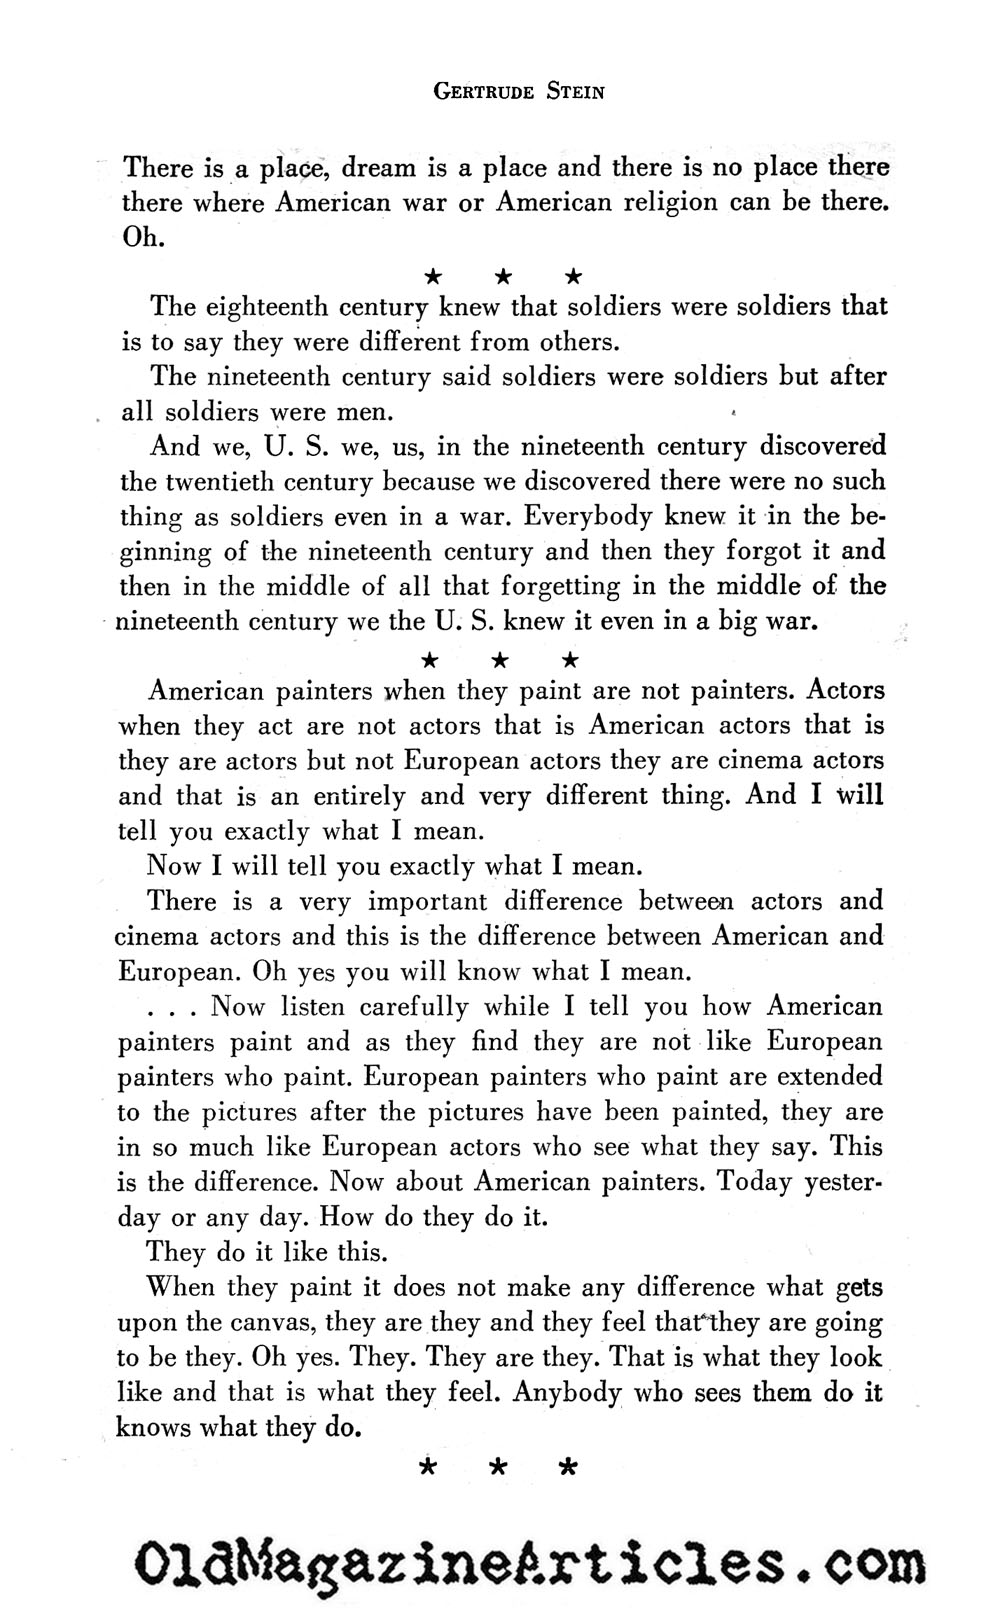 Gertrude Stein on America ('47 Magazine, 1947)